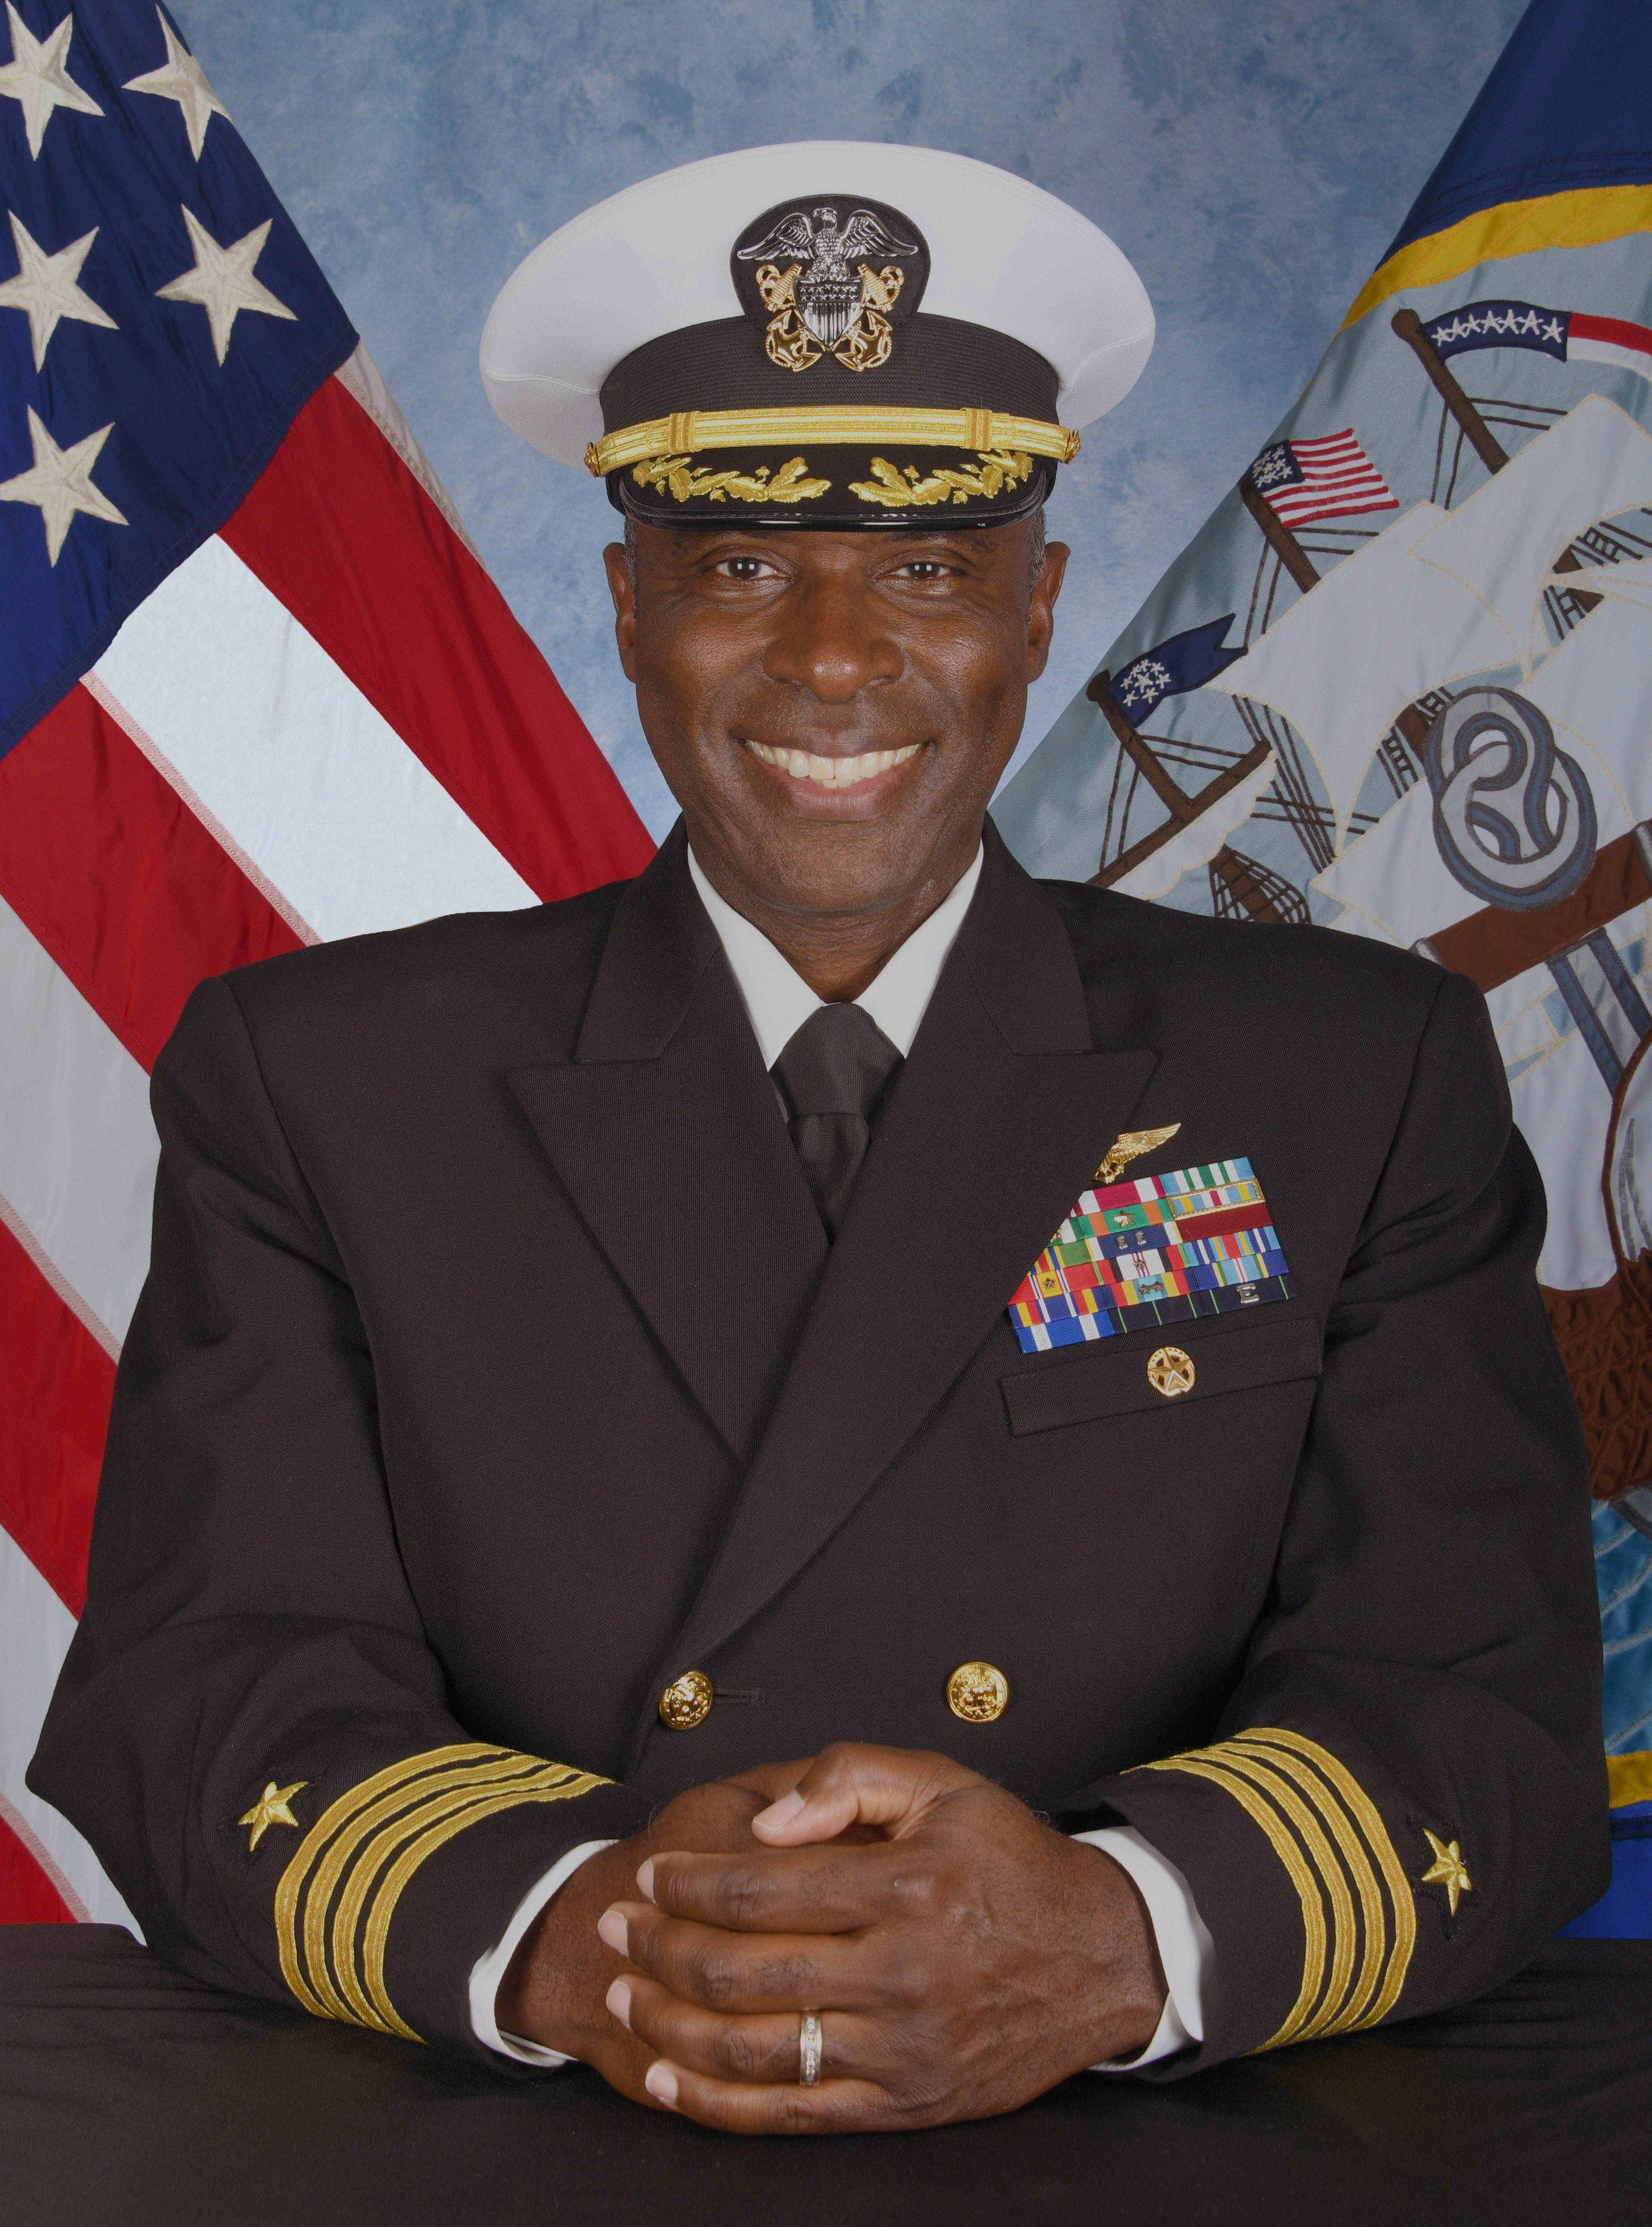 Capt. Gregory deWindt